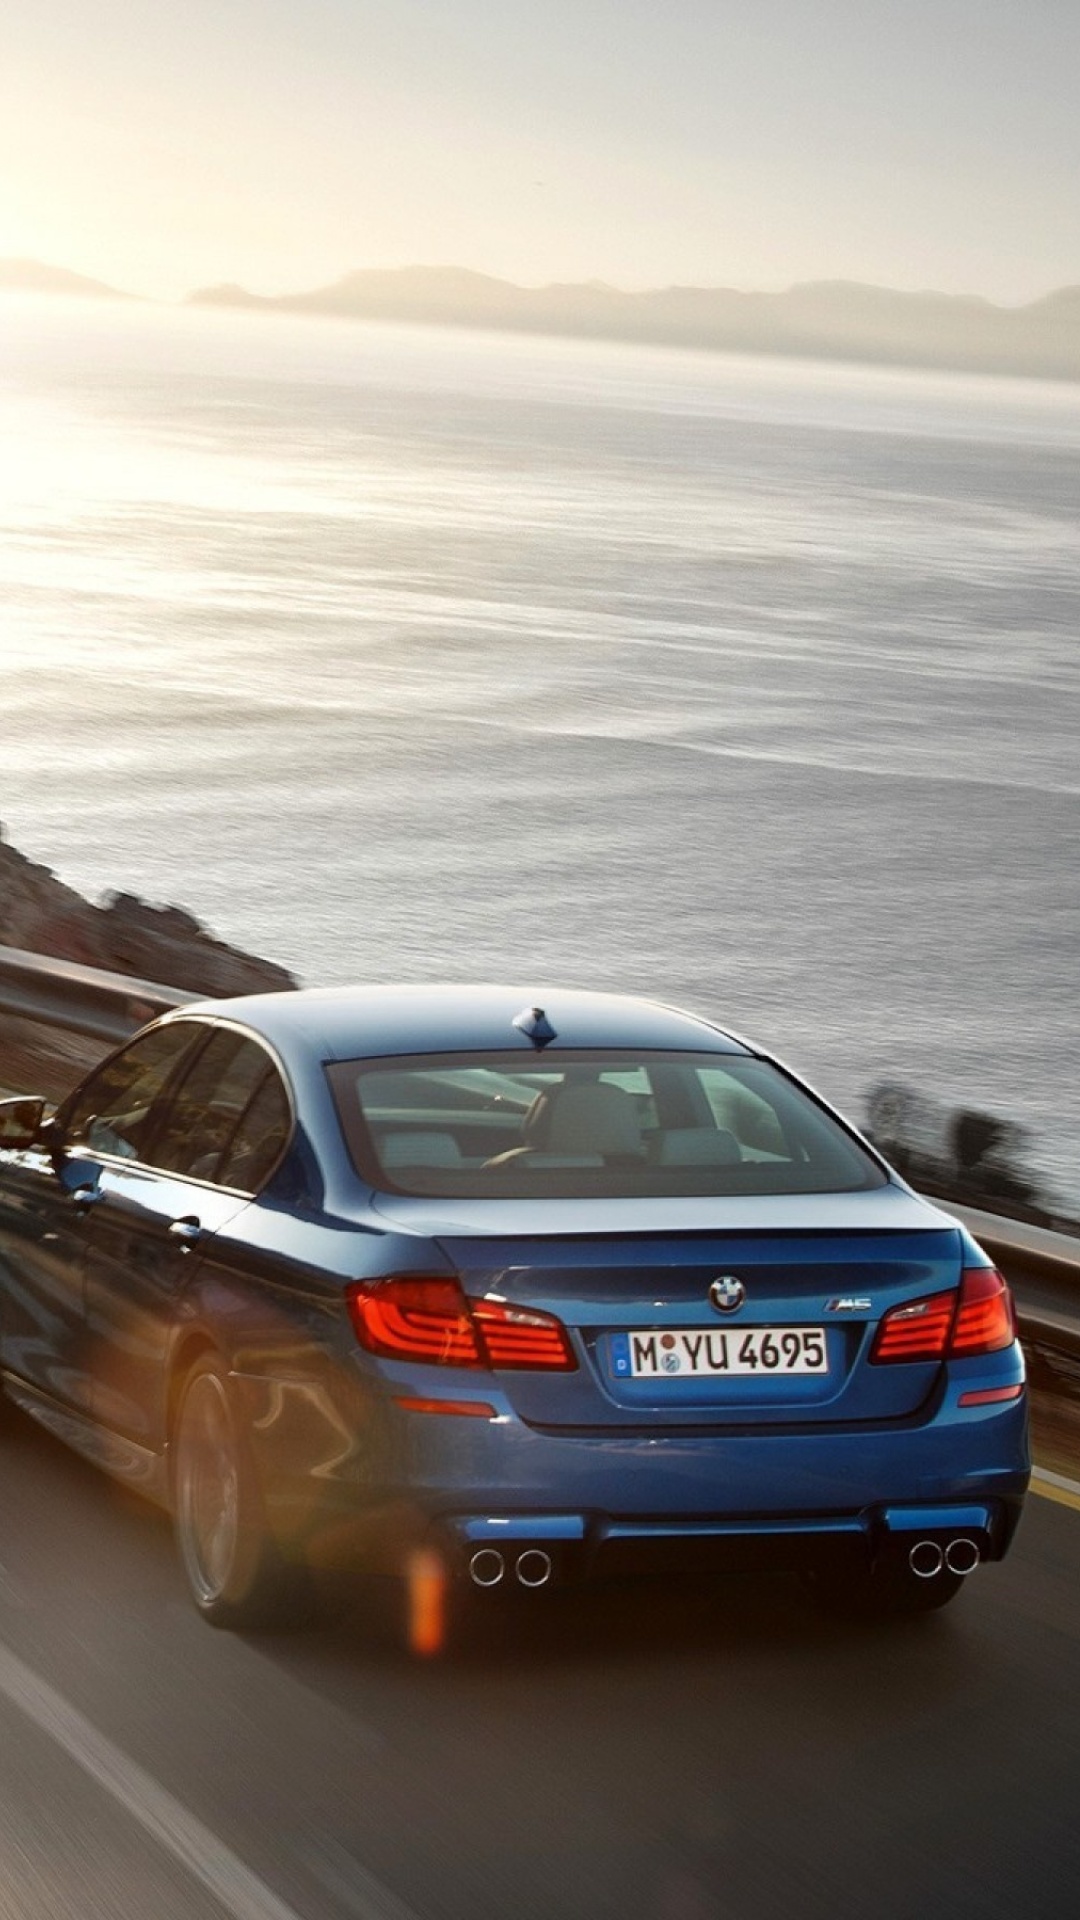 Fondo de pantalla BMW M5 F10 Sedan 1080x1920